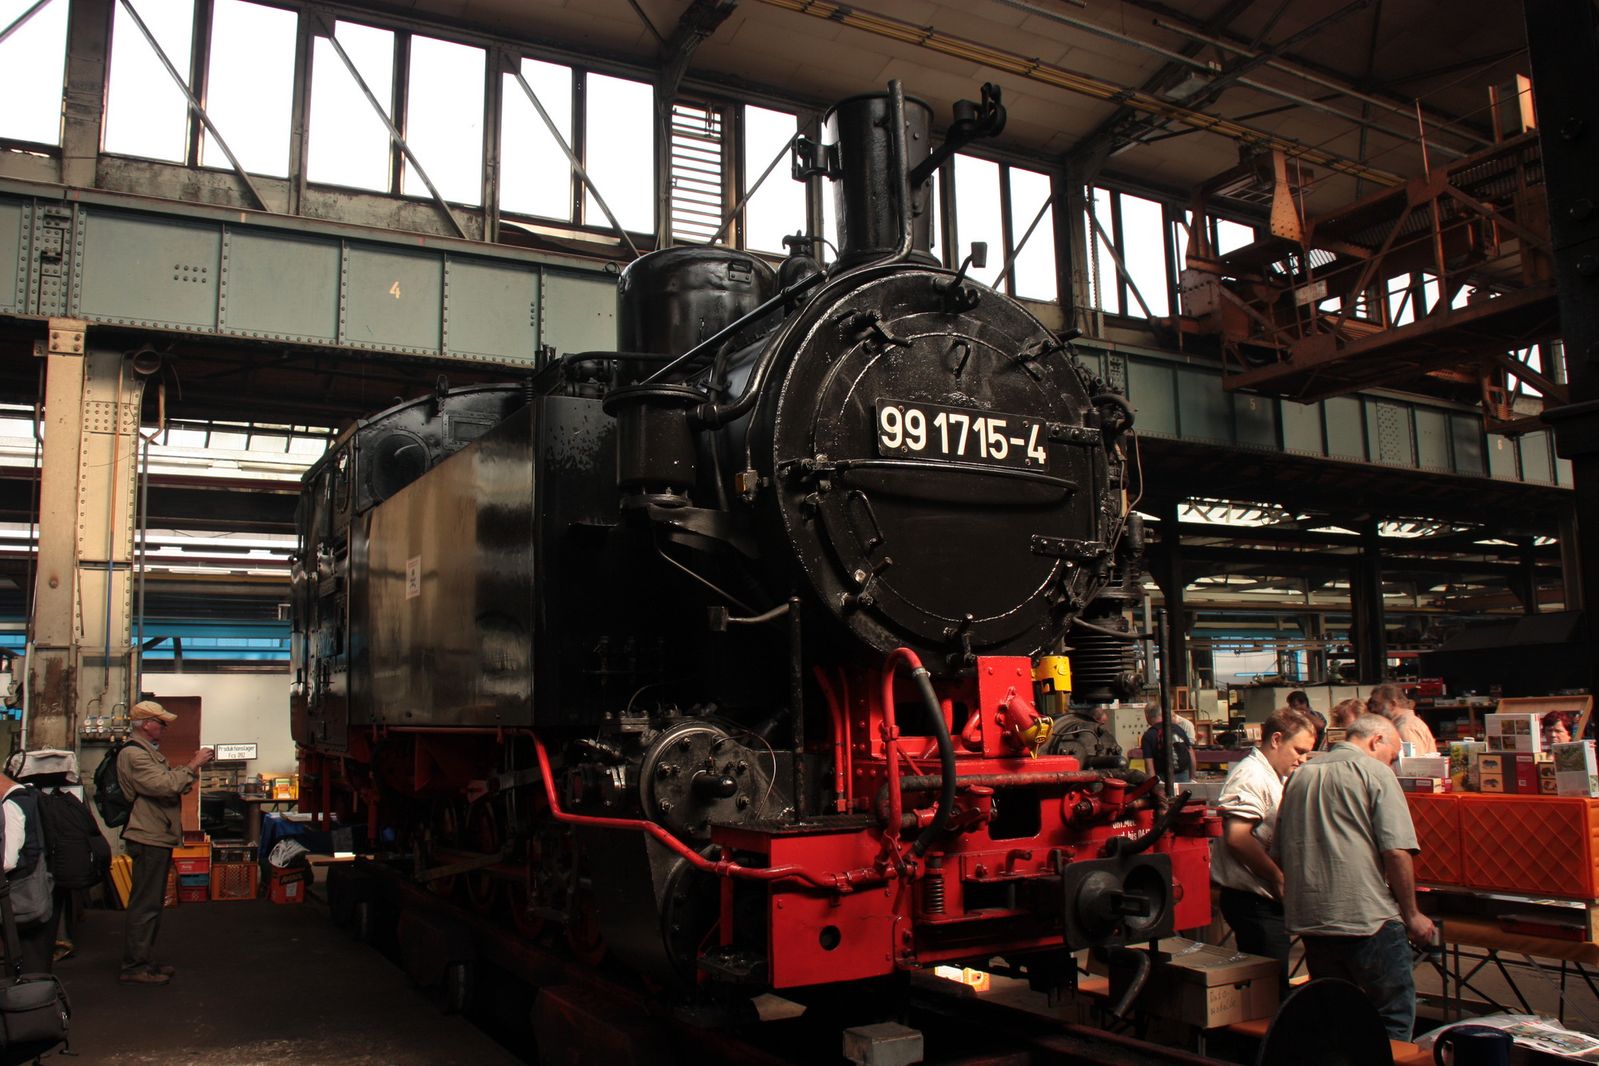 Bei den Meininger Dampfloktagen 2012 präsentierte sich die VI K noch in komplettem Zustand, die Arbeiten an der Lok wurden erst danach begonnen.